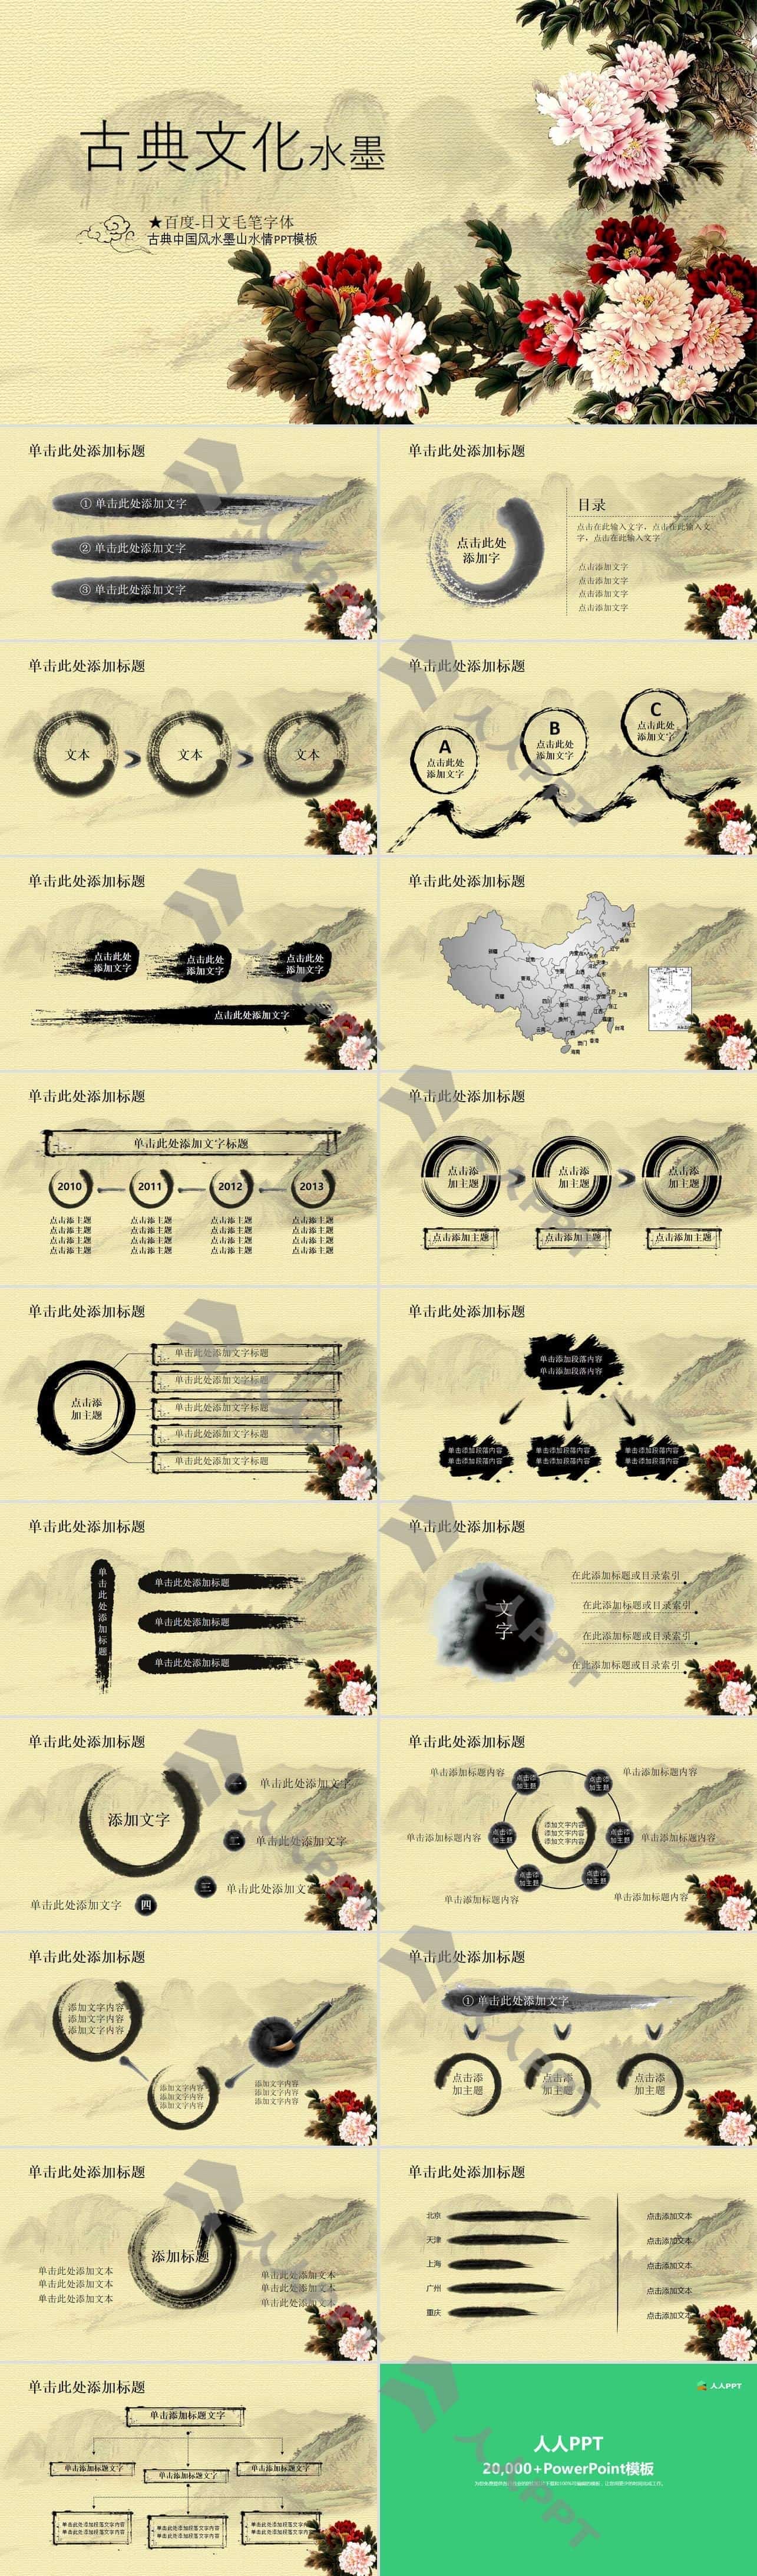 蝴蝶戏牡丹古典文化水墨中国风工作总结报告PPT模板长图